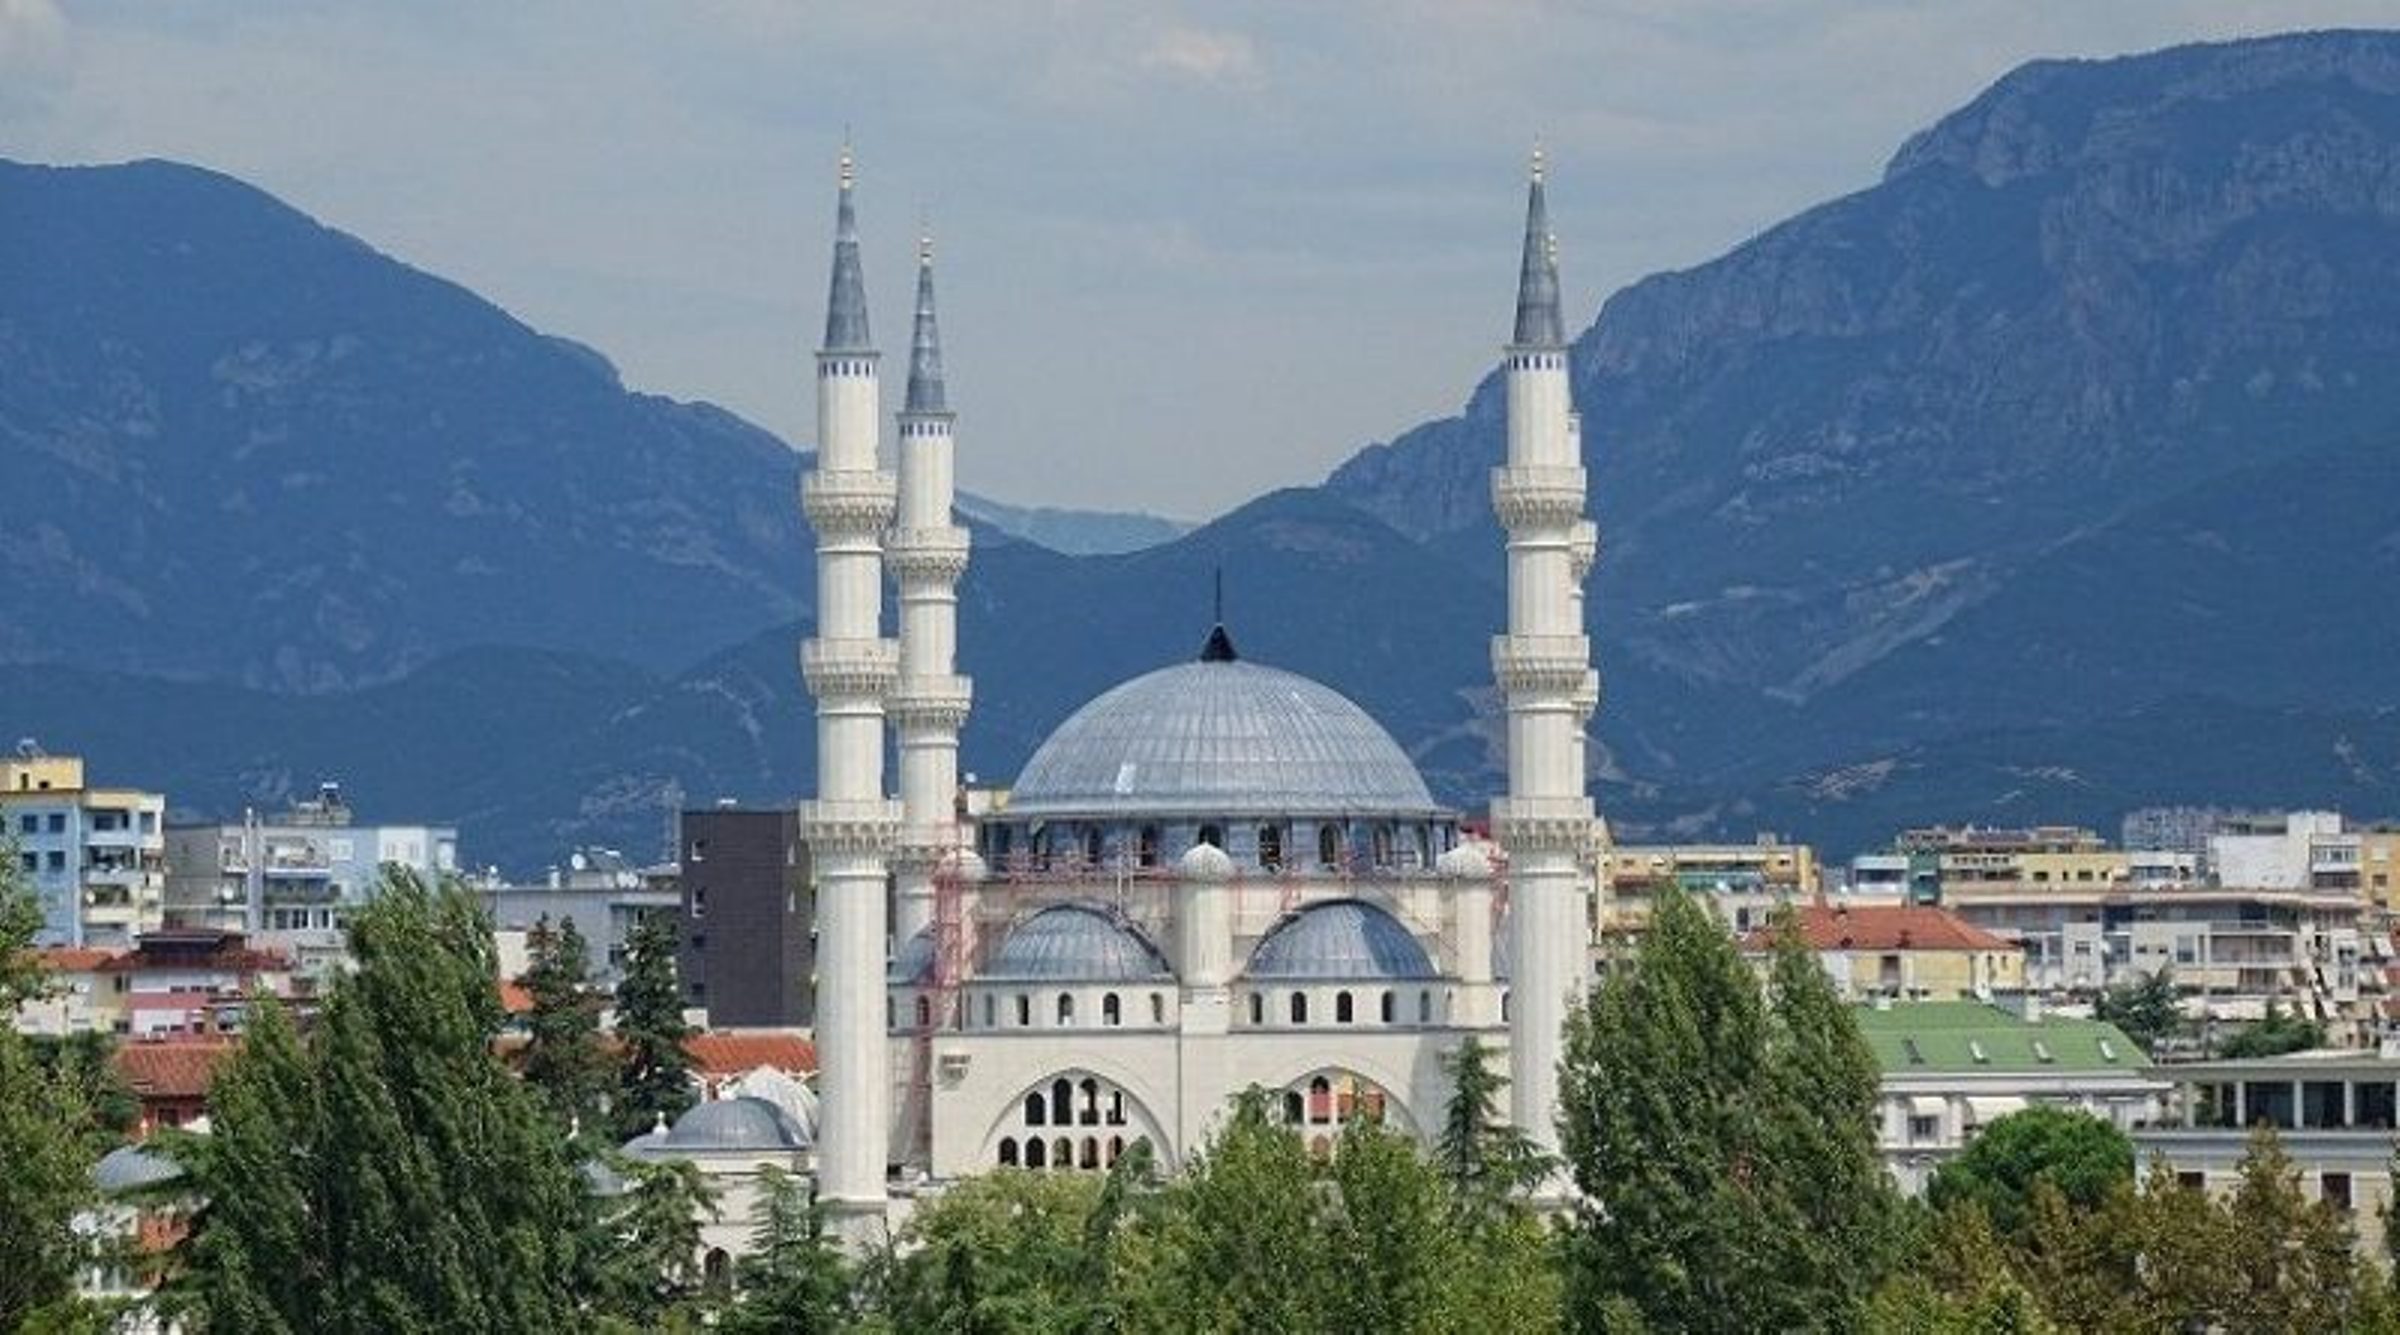 Dulu Menjadi Negara Ateis, Kini Sebagai Negara Muslim Terbanyak di Eropa, Bisa Tebak?